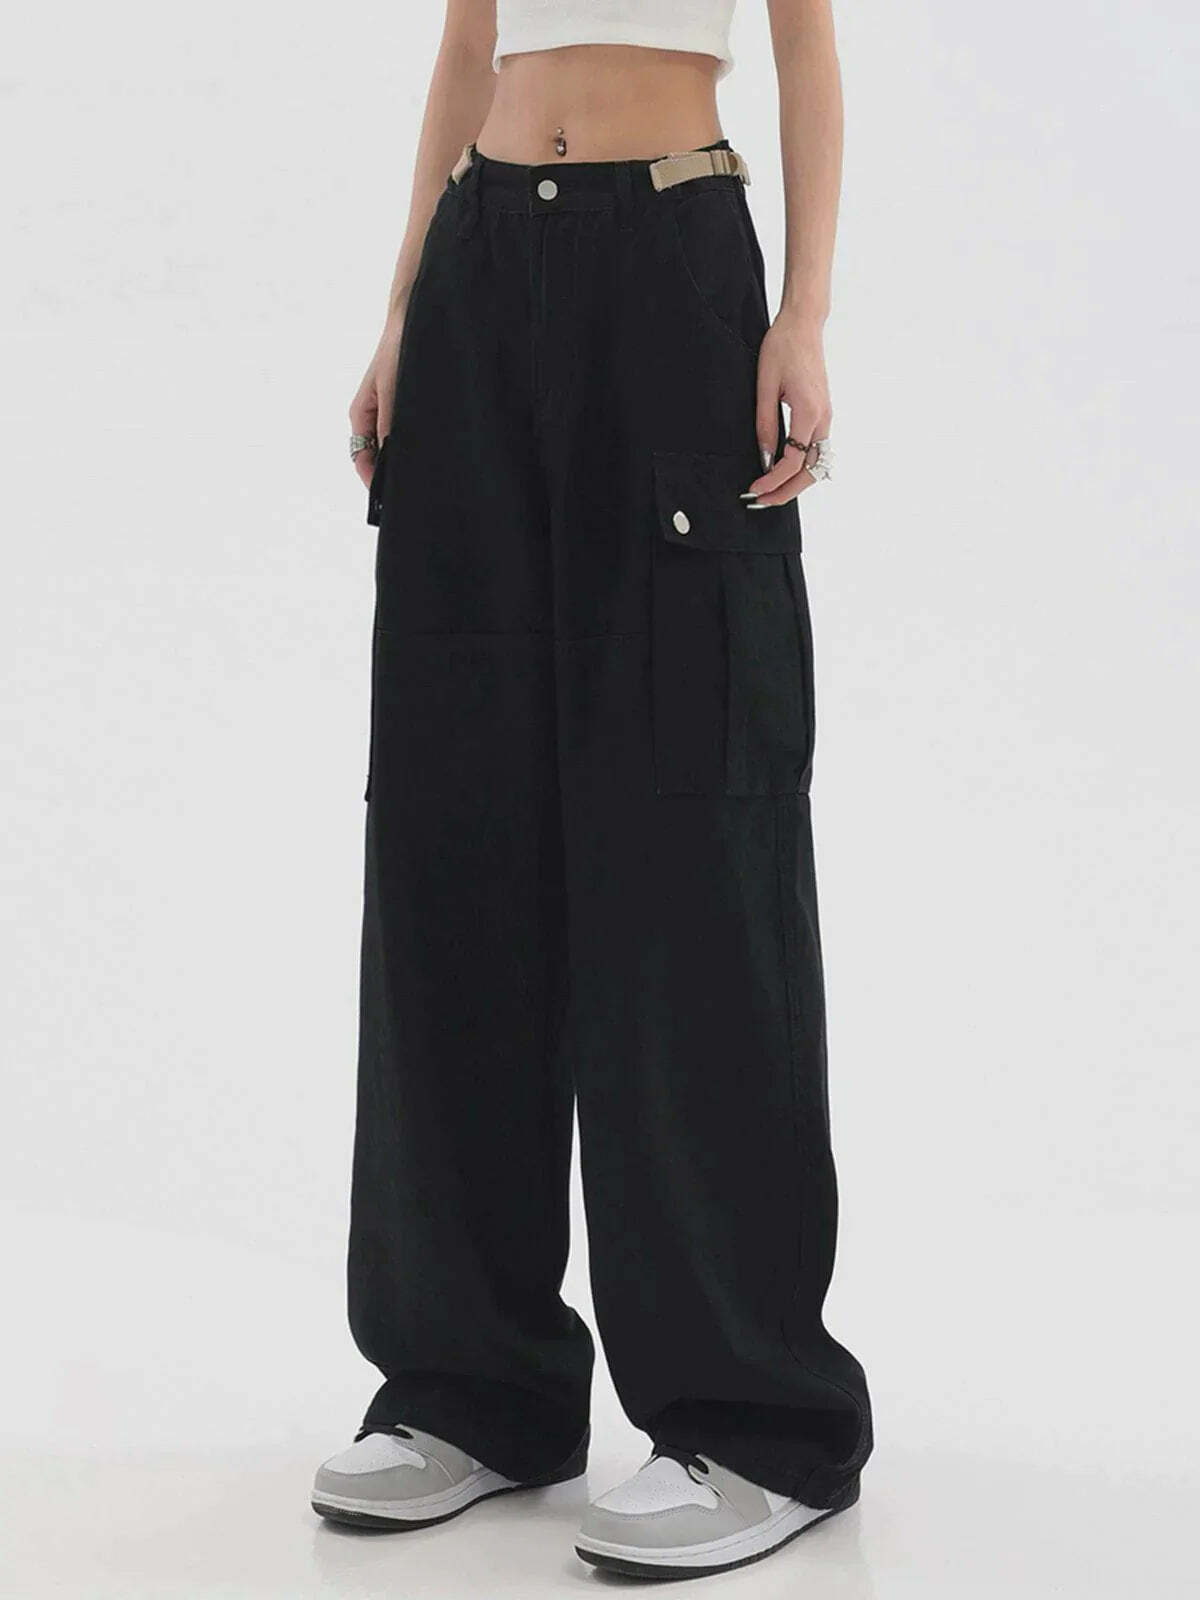 y2k cargo pants urban streetwear essential 7988